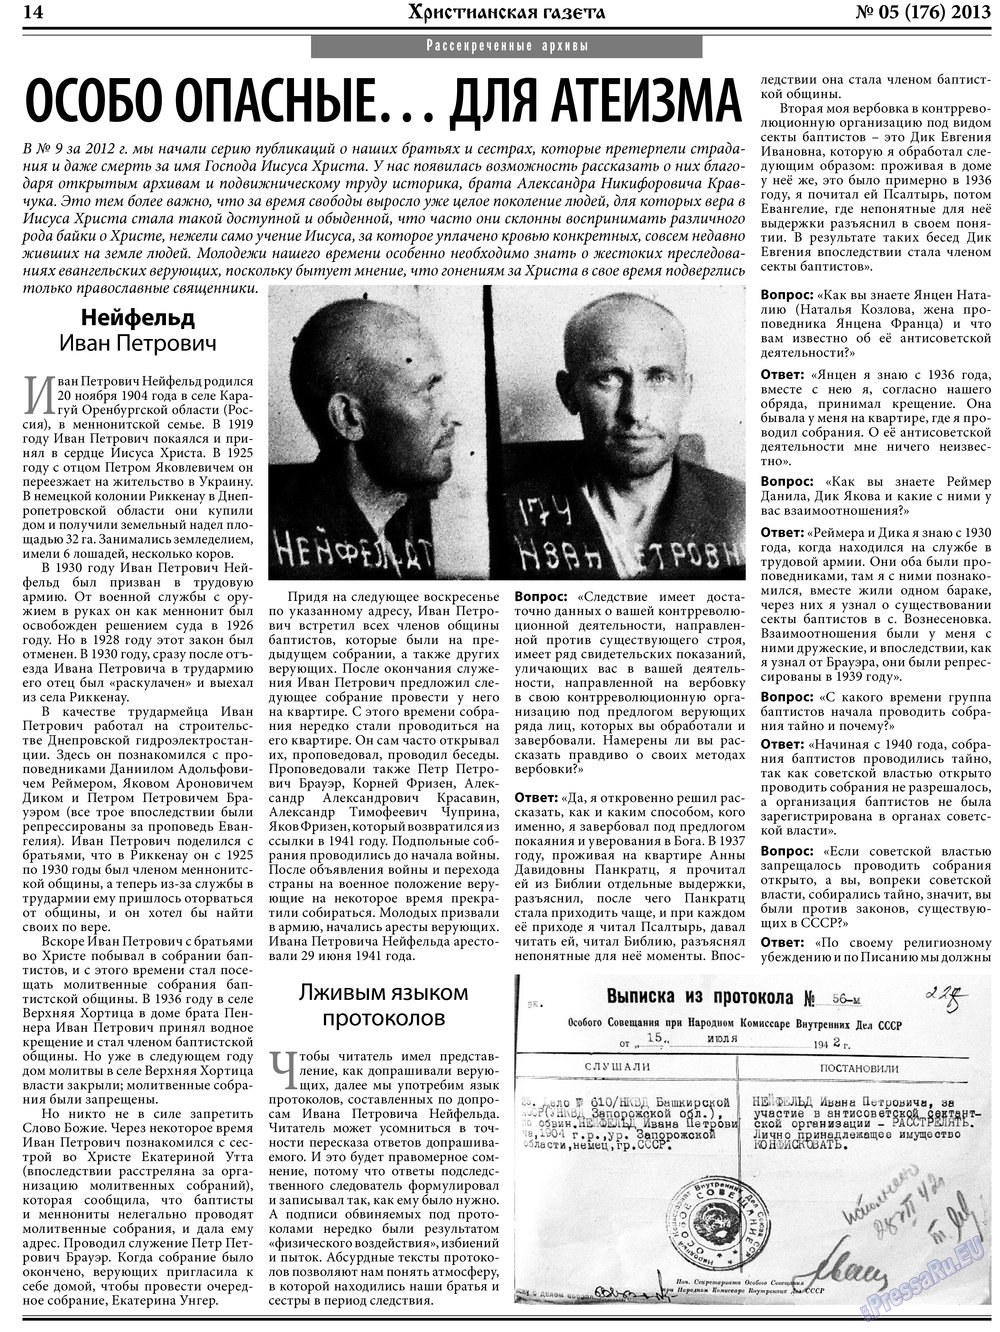 Hristianskaja gazeta (Zeitung). 2013 Jahr, Ausgabe 5, Seite 22